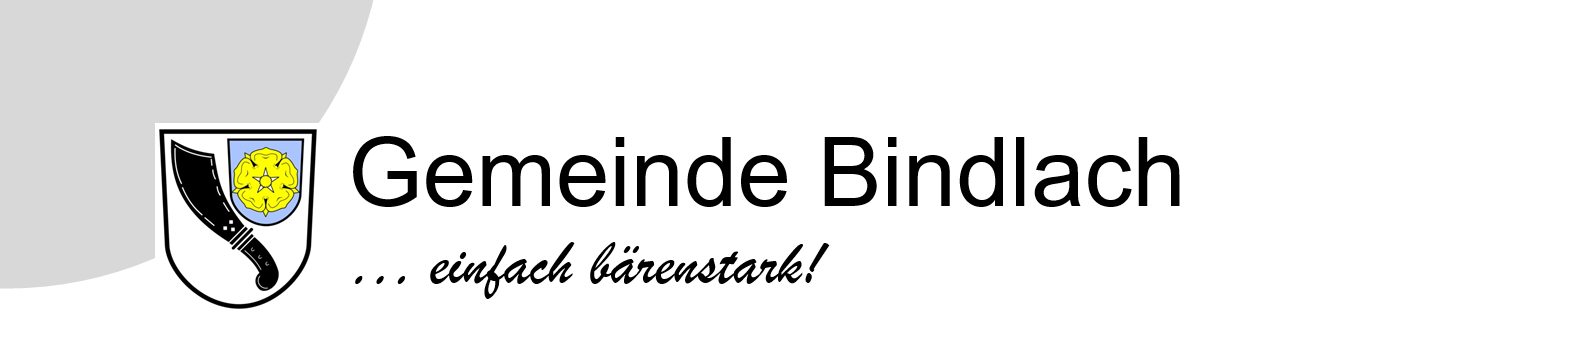 Gemeinde Bindlach